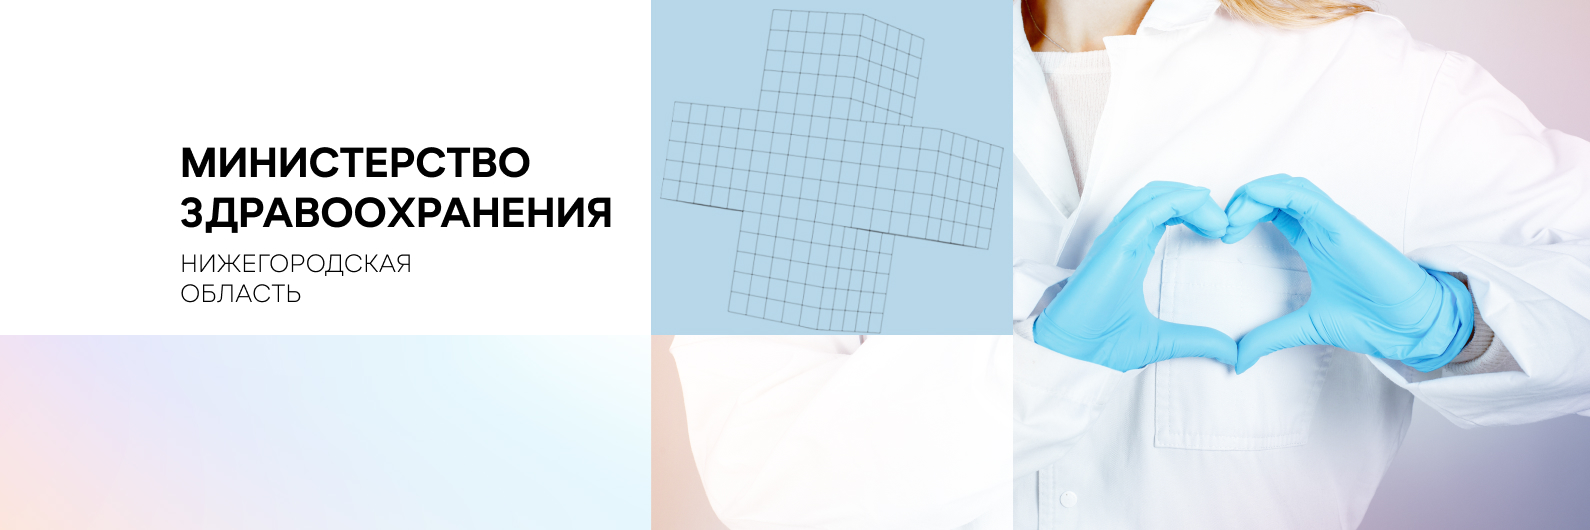 18 единиц медоборудования закуплено Нижегородской области по проекту «Борьба с онкологическими заболеваниями» в рамках нацпроекта «Здравоохранение»